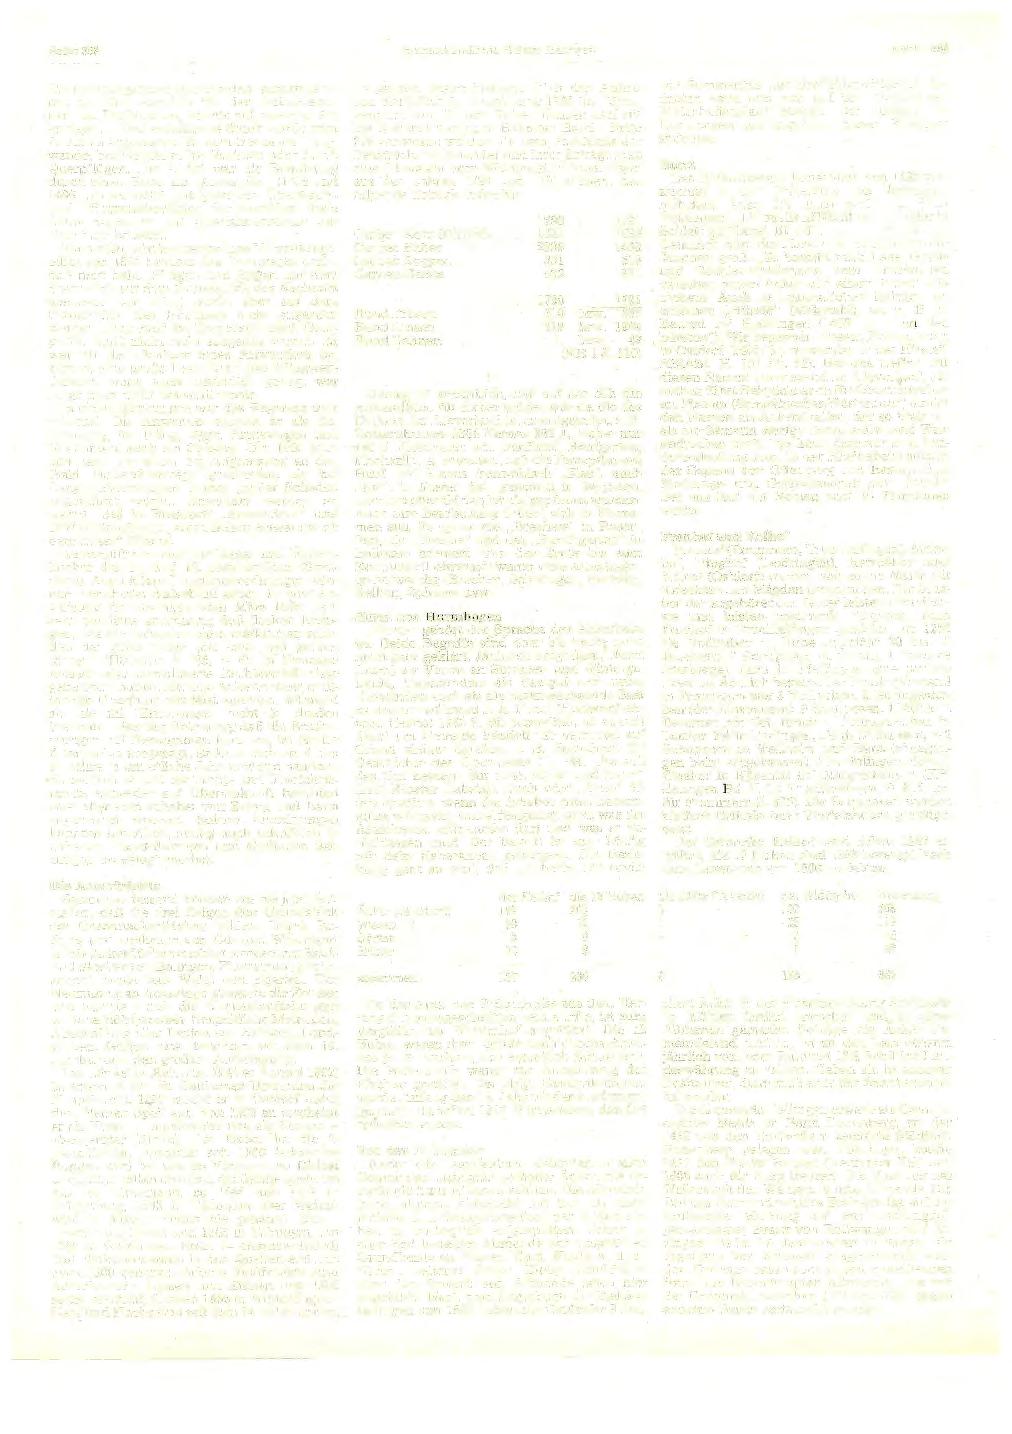 Seite 398 Heimatkundliehe Blätter Balingen April 1983 Die brachliegenden Querstreifen w urden dann m it der Zeit ebenfalls für den Getreidebau benutzt. Die Nutzung konnte auf zweierlei Art erfolgen.